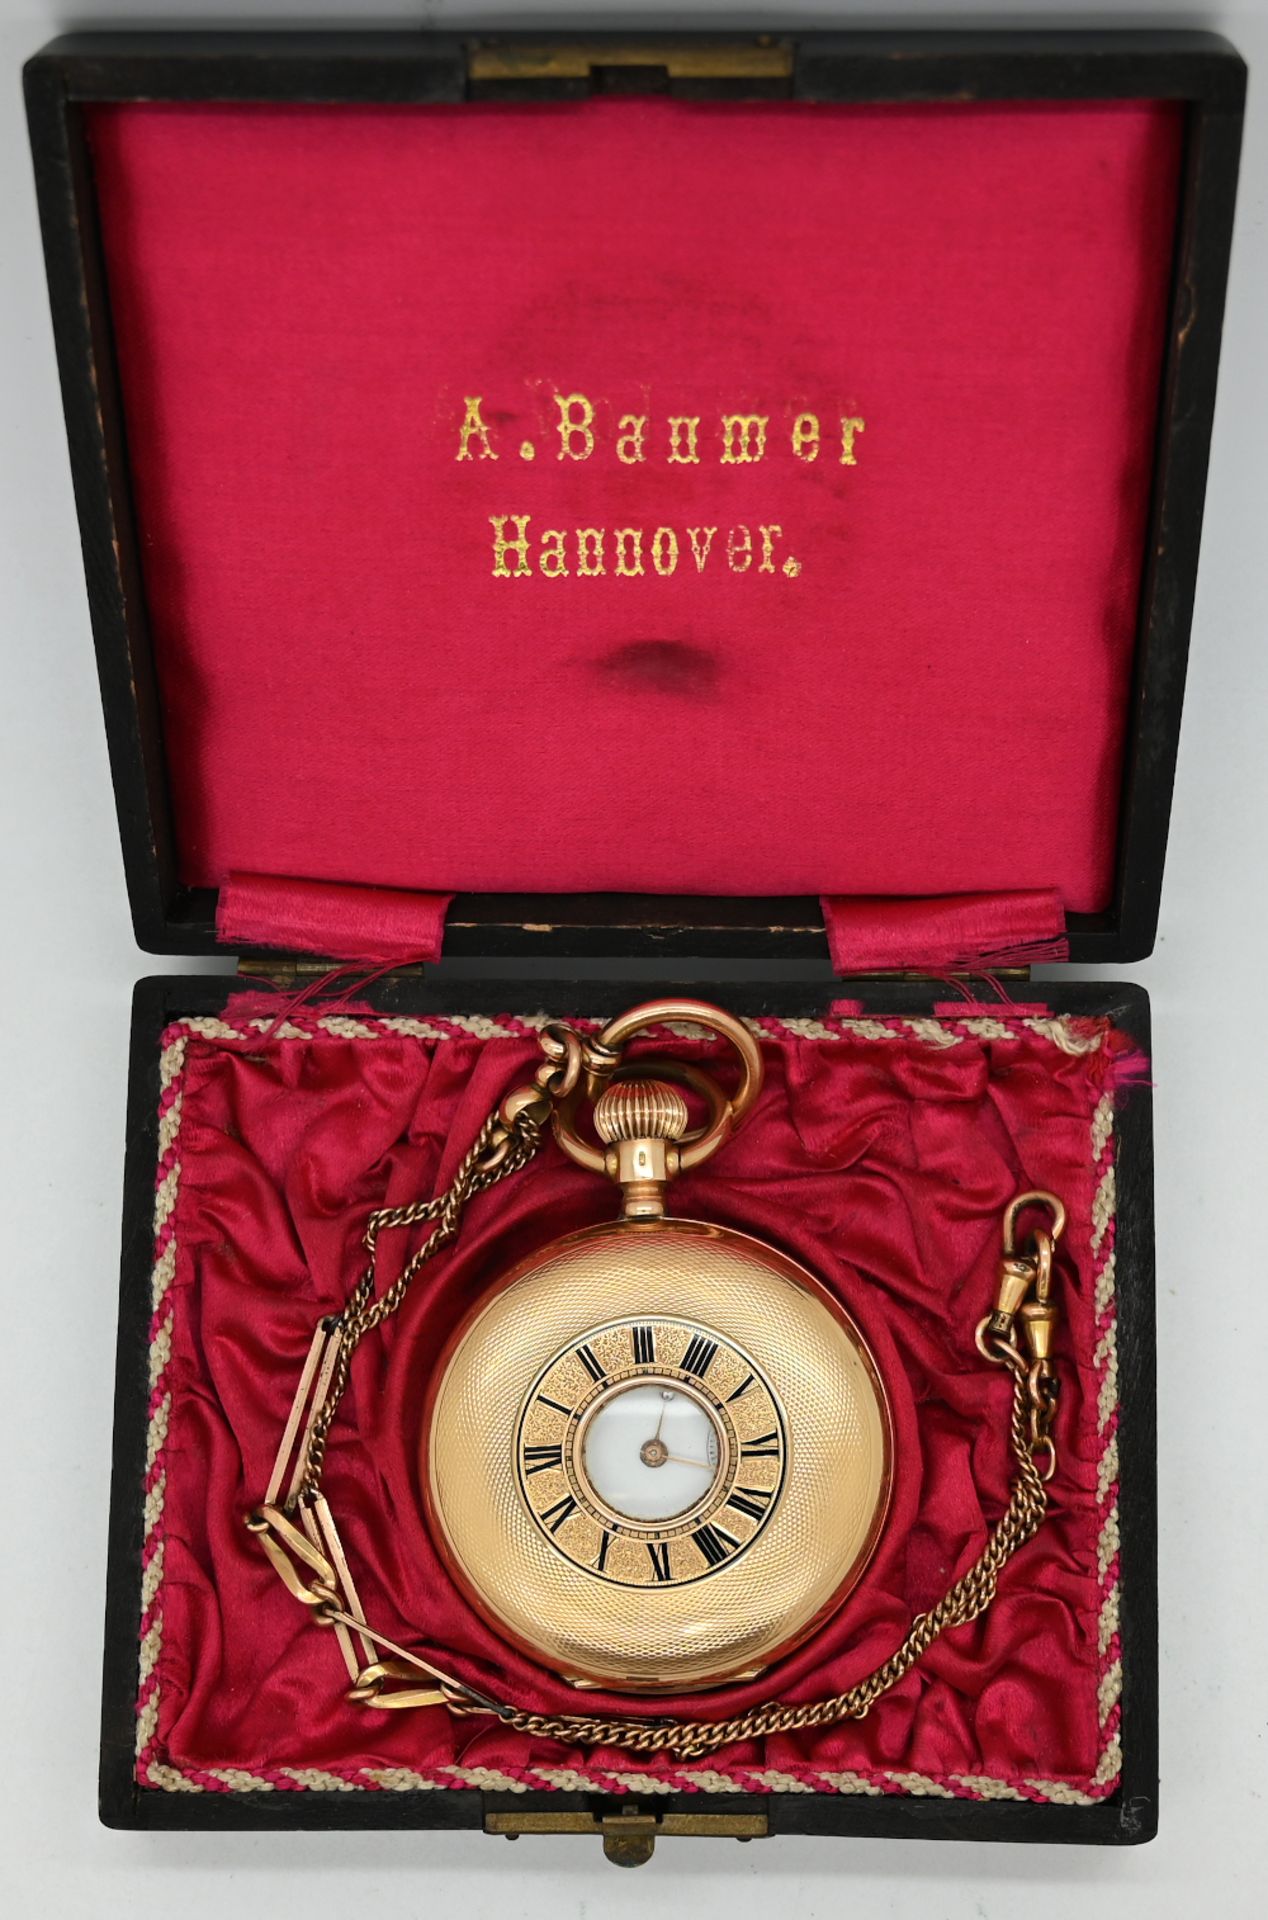 1 Herrentaschenuhr GG 14ct., um 1900 (3 Deckel Gold), Uhrkette vergoldet, in alter Schatulle, jeweil